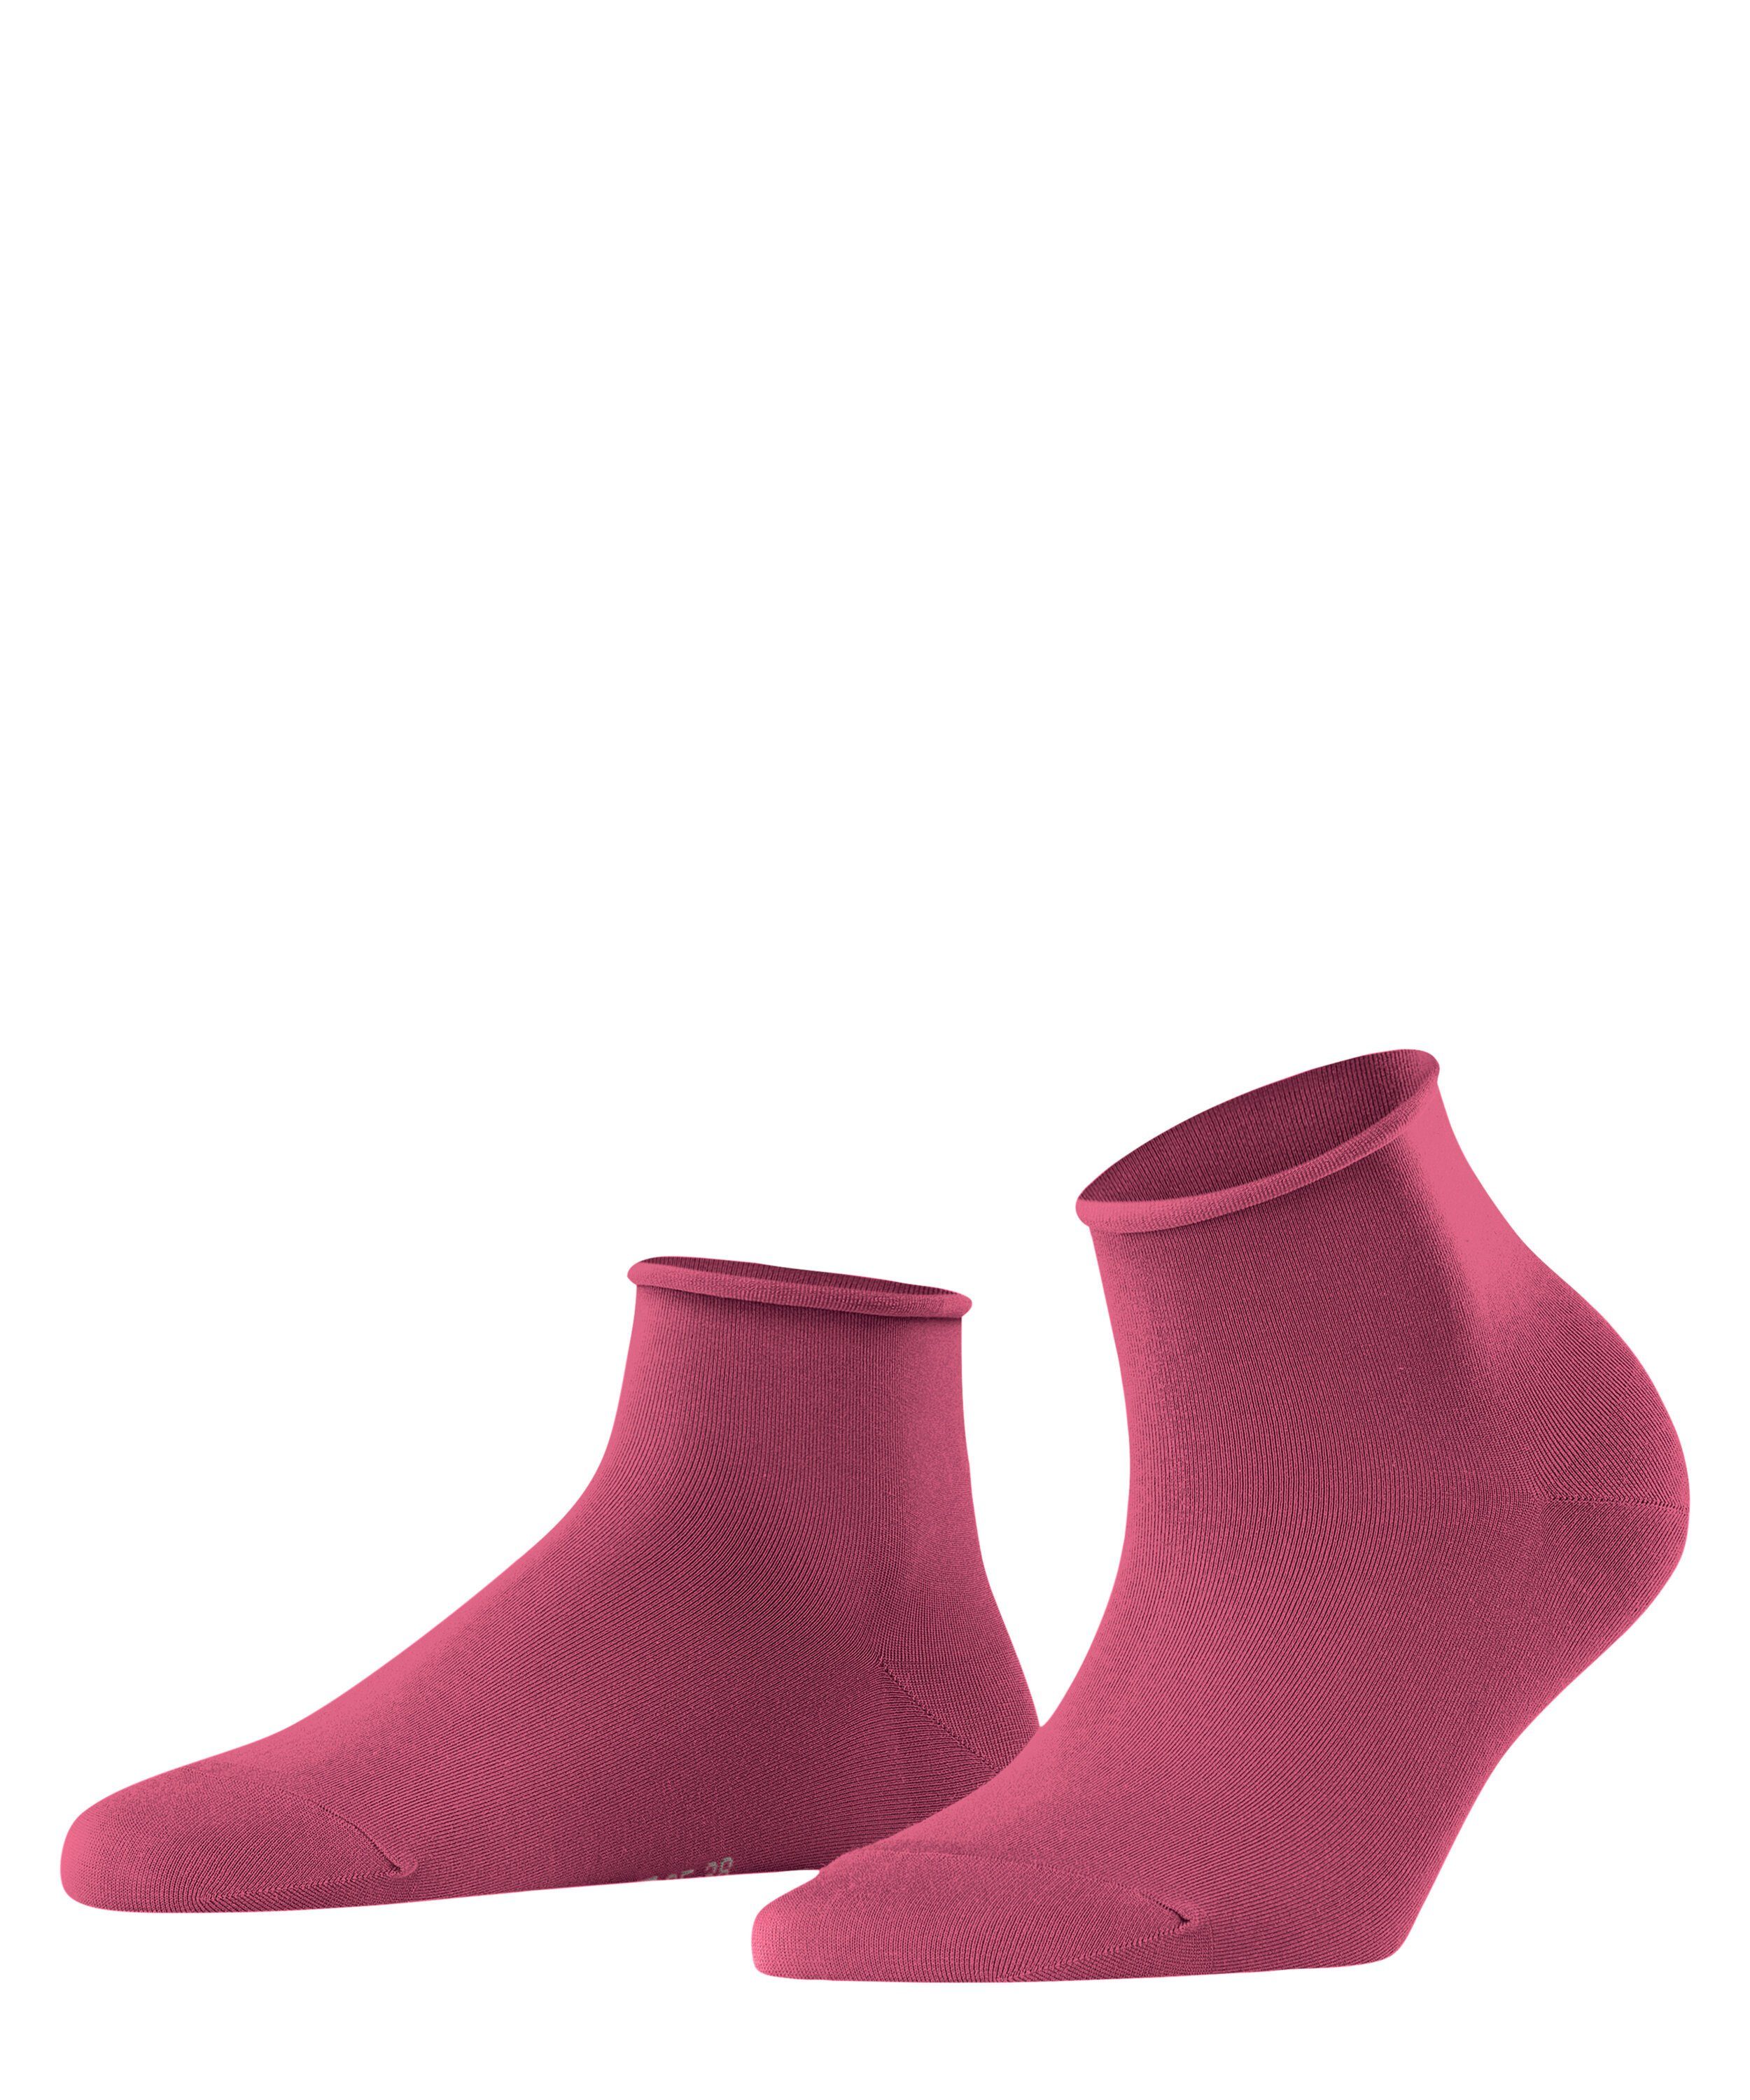 FALKE Socken Cotton Touch (1-Paar) engl. rose (8025)